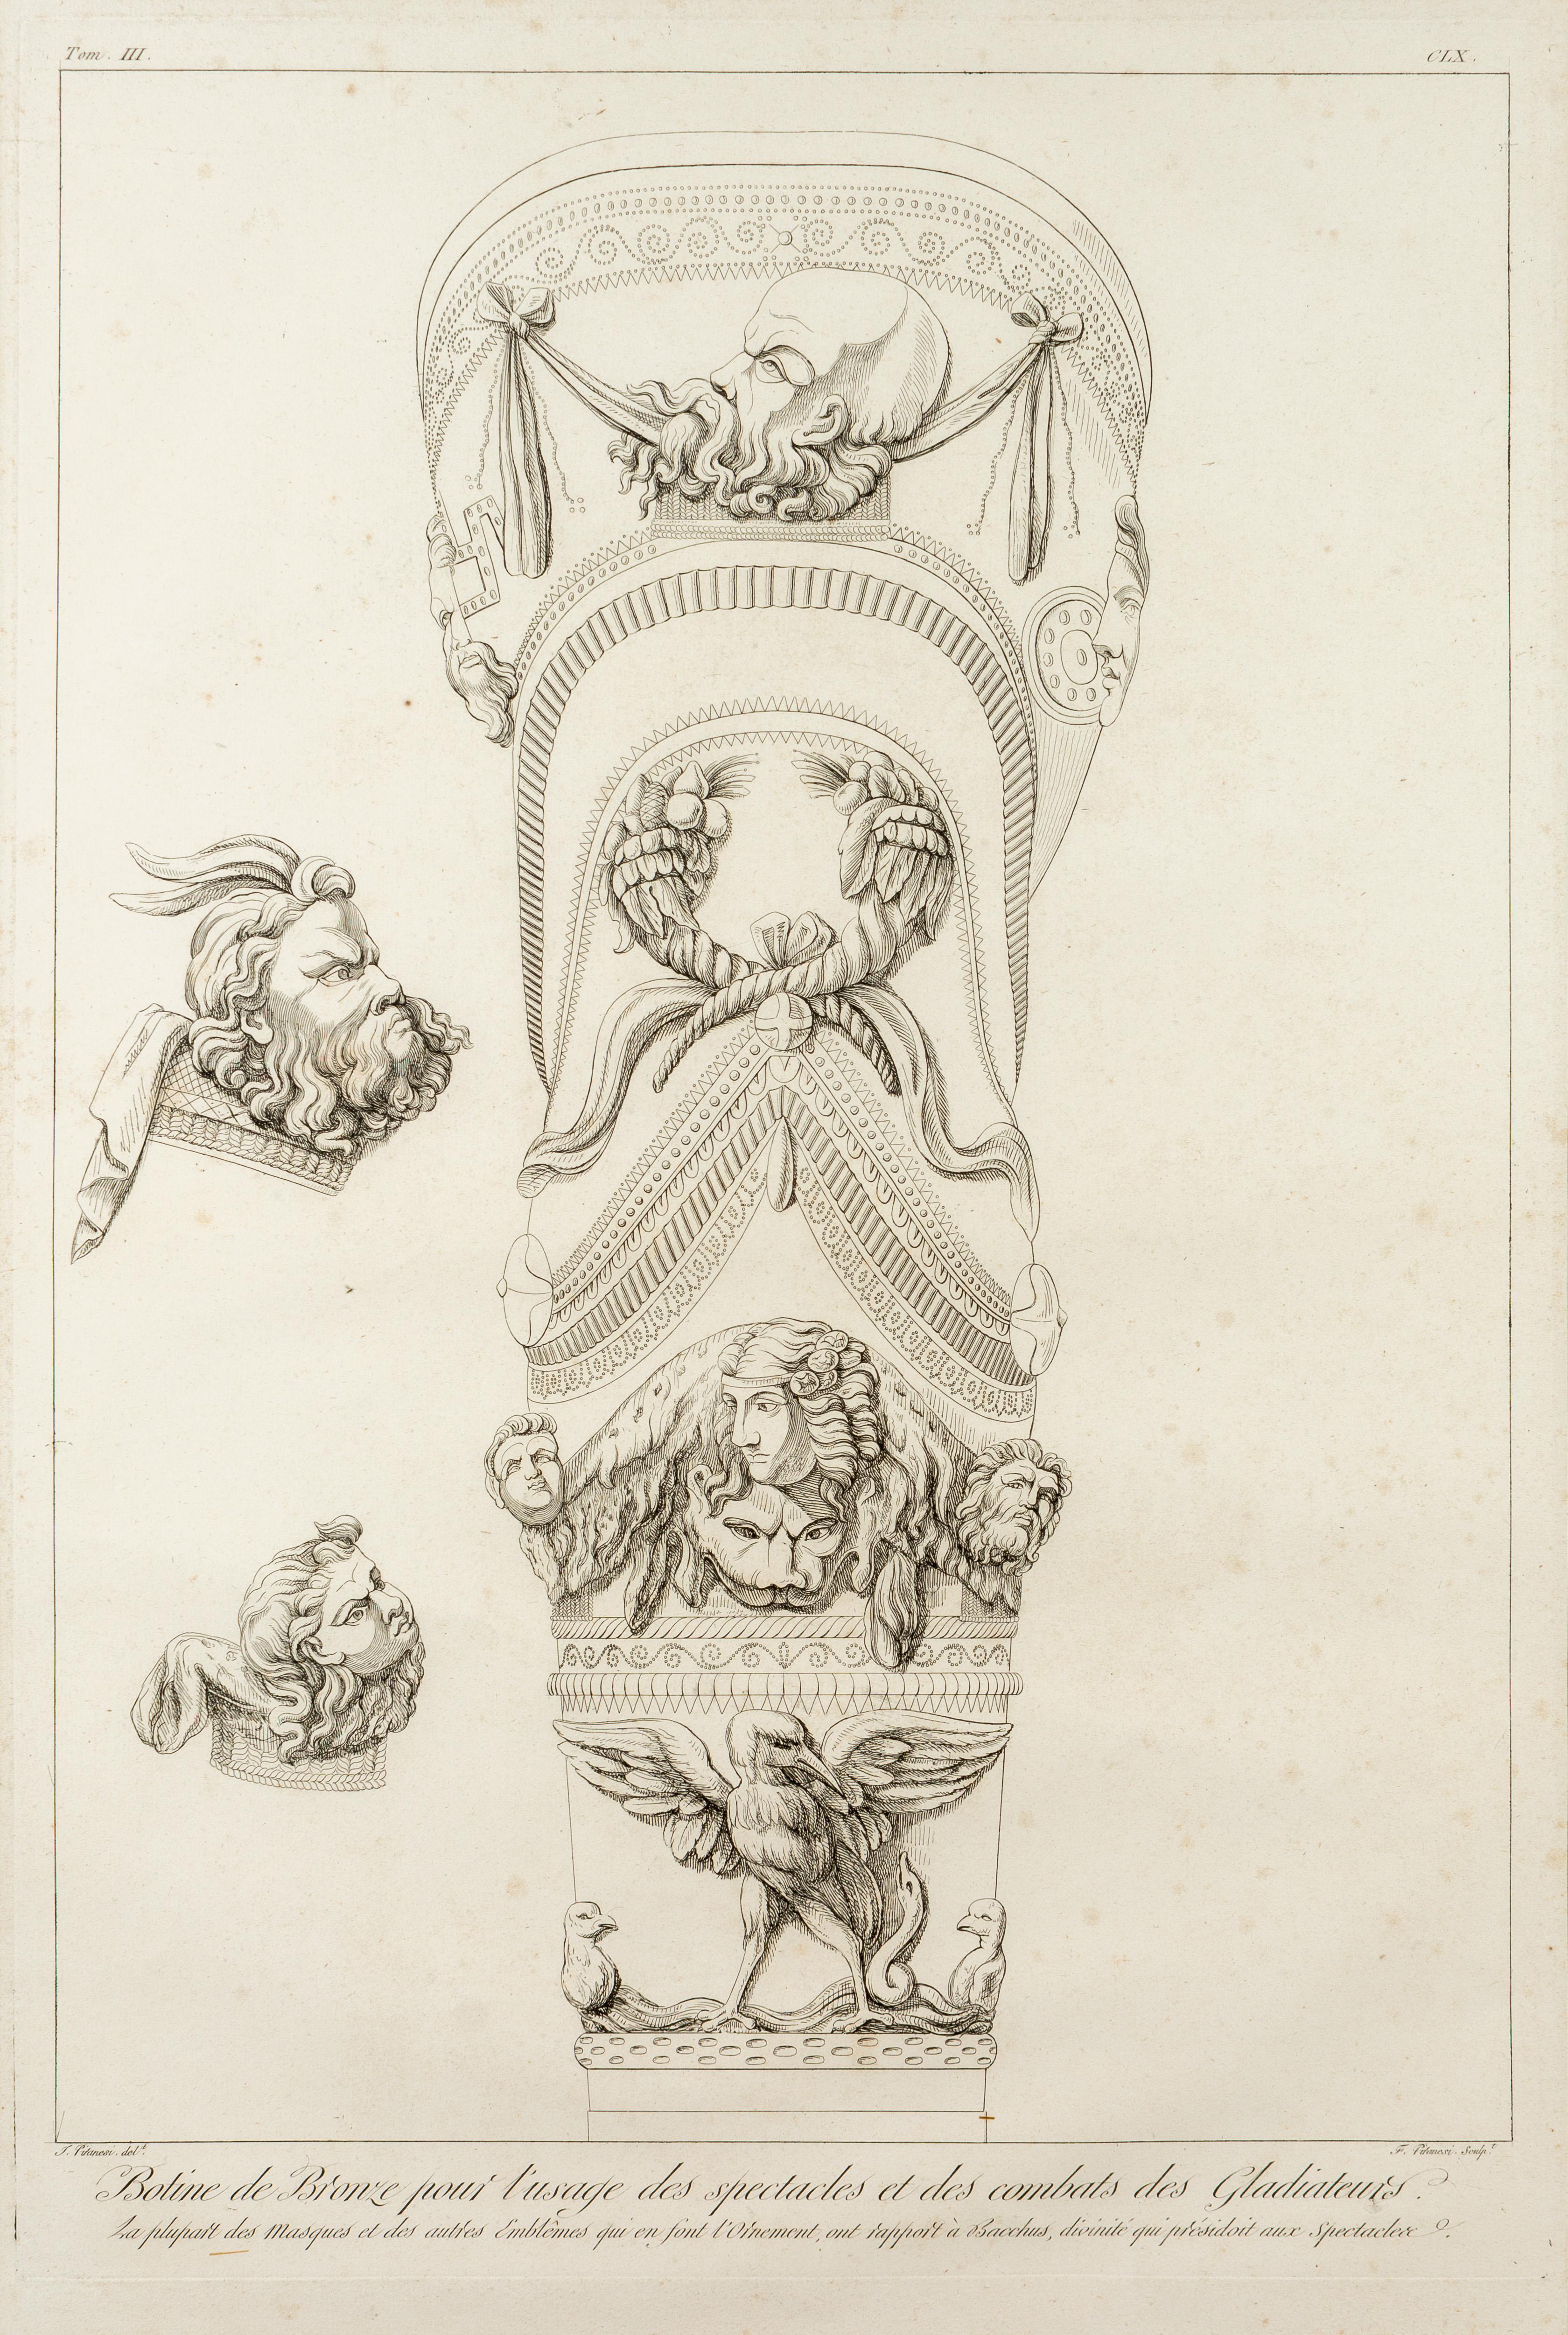 Grande gravure du 19e siècle réalisée par Giovanni Battista Piranesi représentant la décoration de l'armure des jambes portée par un gladiateur romain. L'illustration comprend des masques et des emblèmes de Bacchus. Imprimé à Paris à partir des